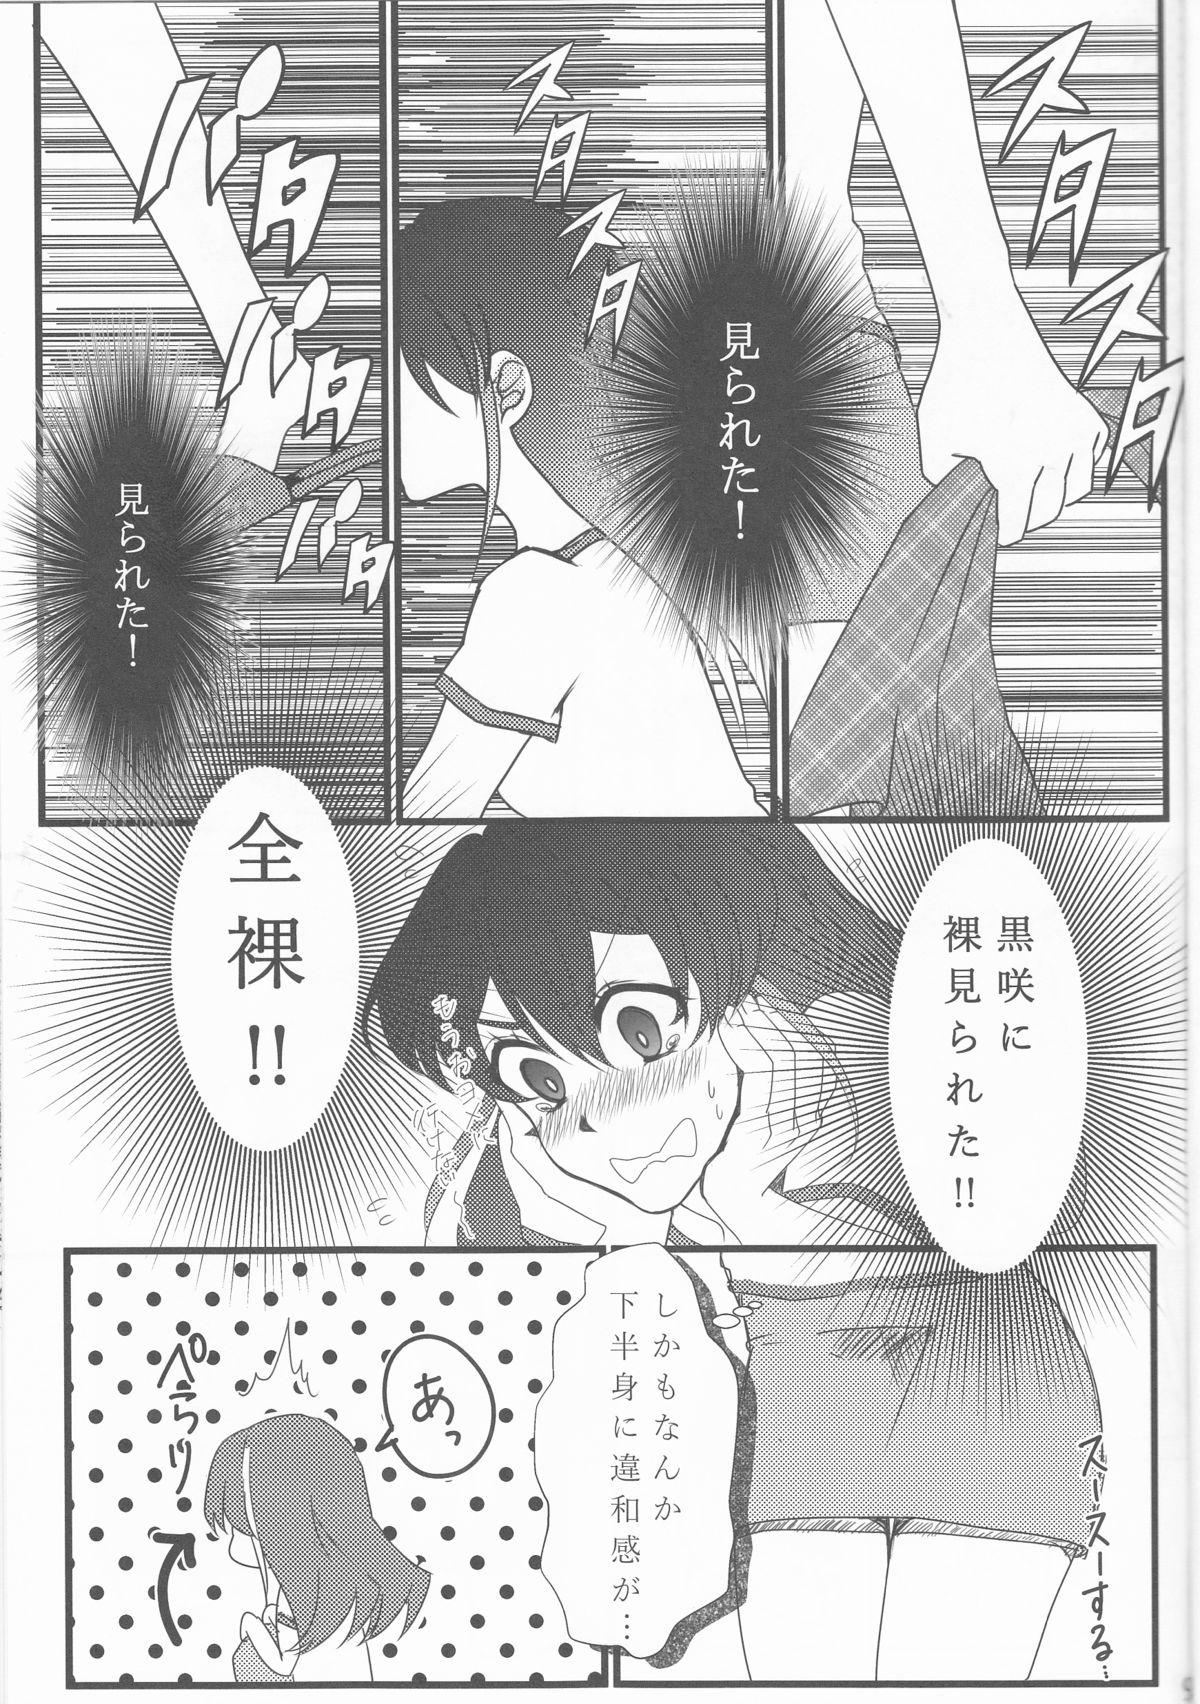 Anale Hoshoku Kankei ni Aru Serena to Shun ga Renai Kanjou o Idaku to Kou Naru. - Yu gi oh arc v Whatsapp - Page 10